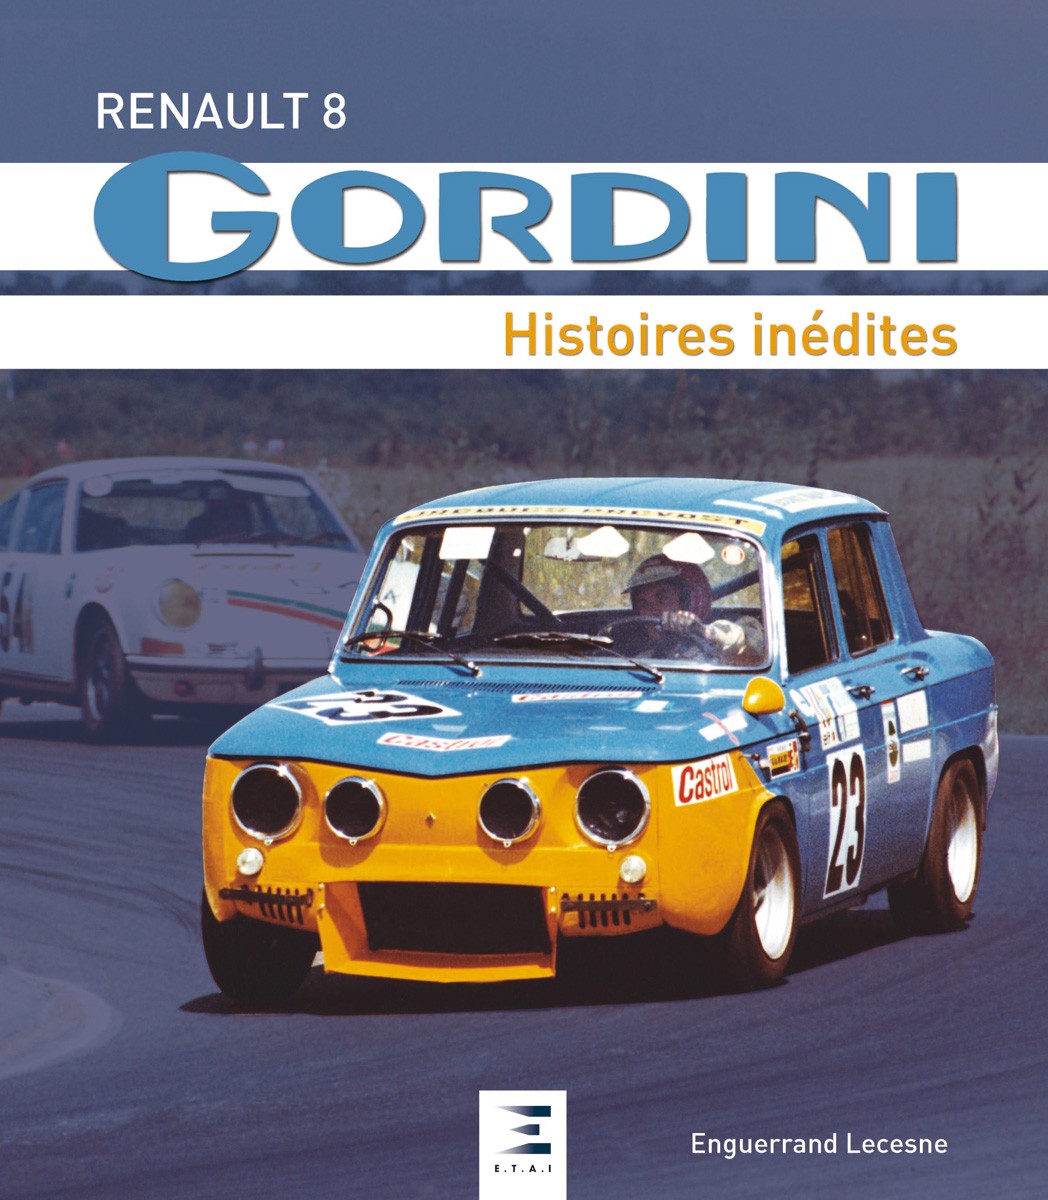 Renault 8 Gordini histoires inédites